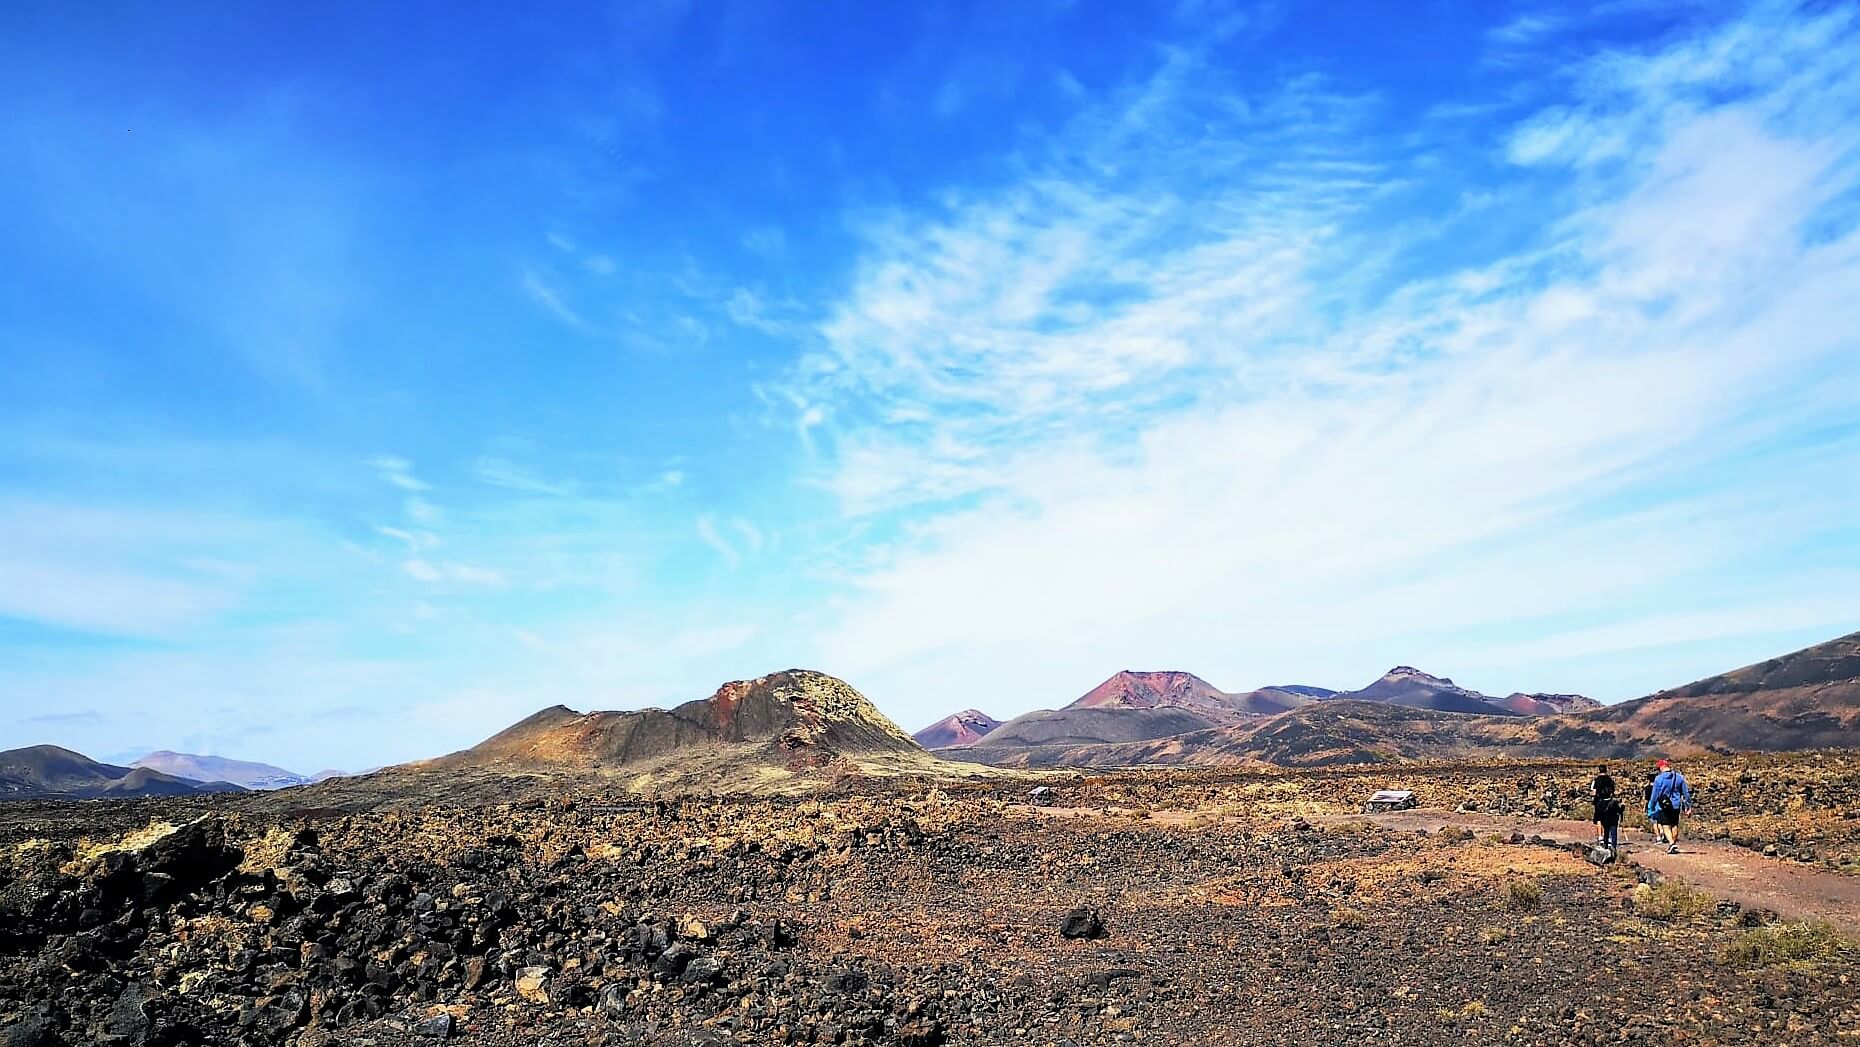 Sendero del Volcán de las Nueces, Parque Natural de los Volcanes, Lanzarote. Fotografía: Josechu Pérez Niz.